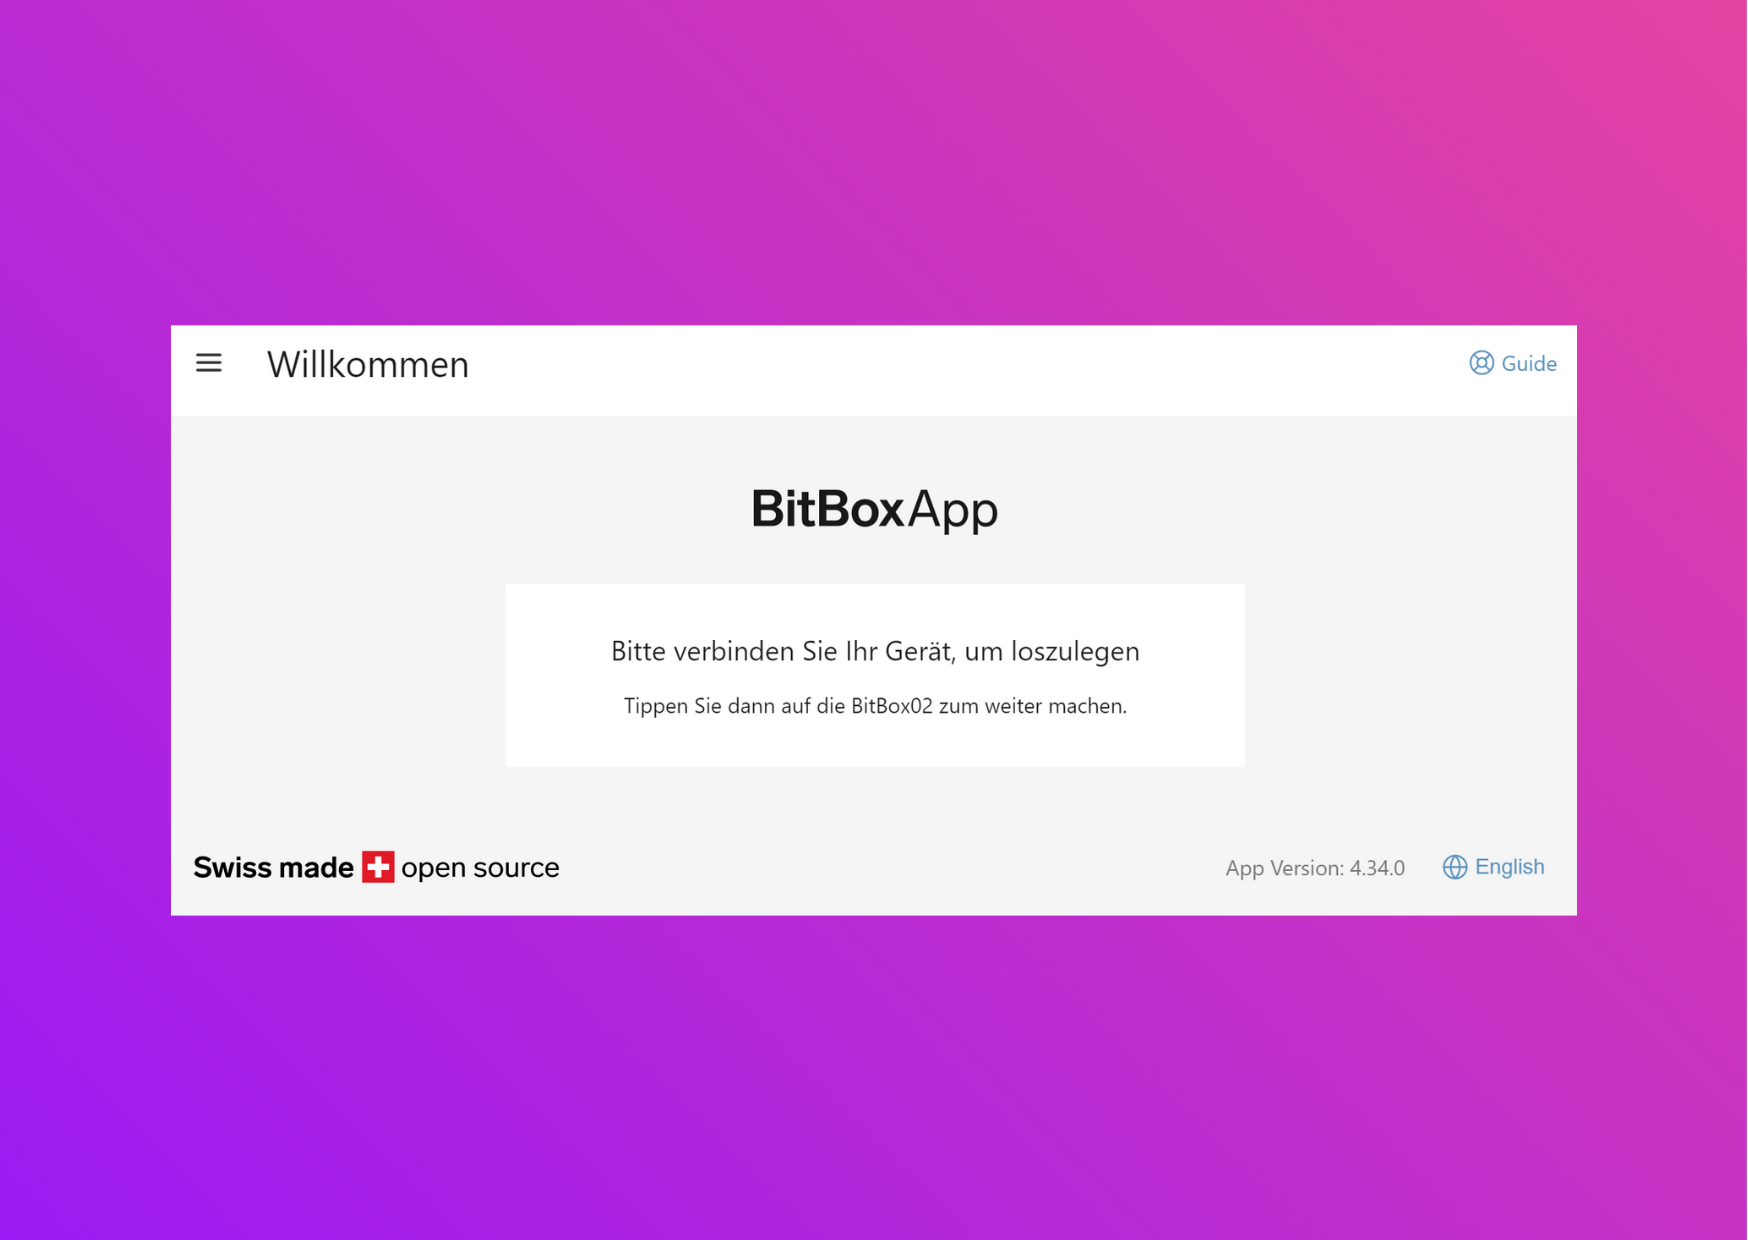 Bildschirmfoto mit der BitboxApp mit der Aufforderung, die Bitbox02 zu verbinden